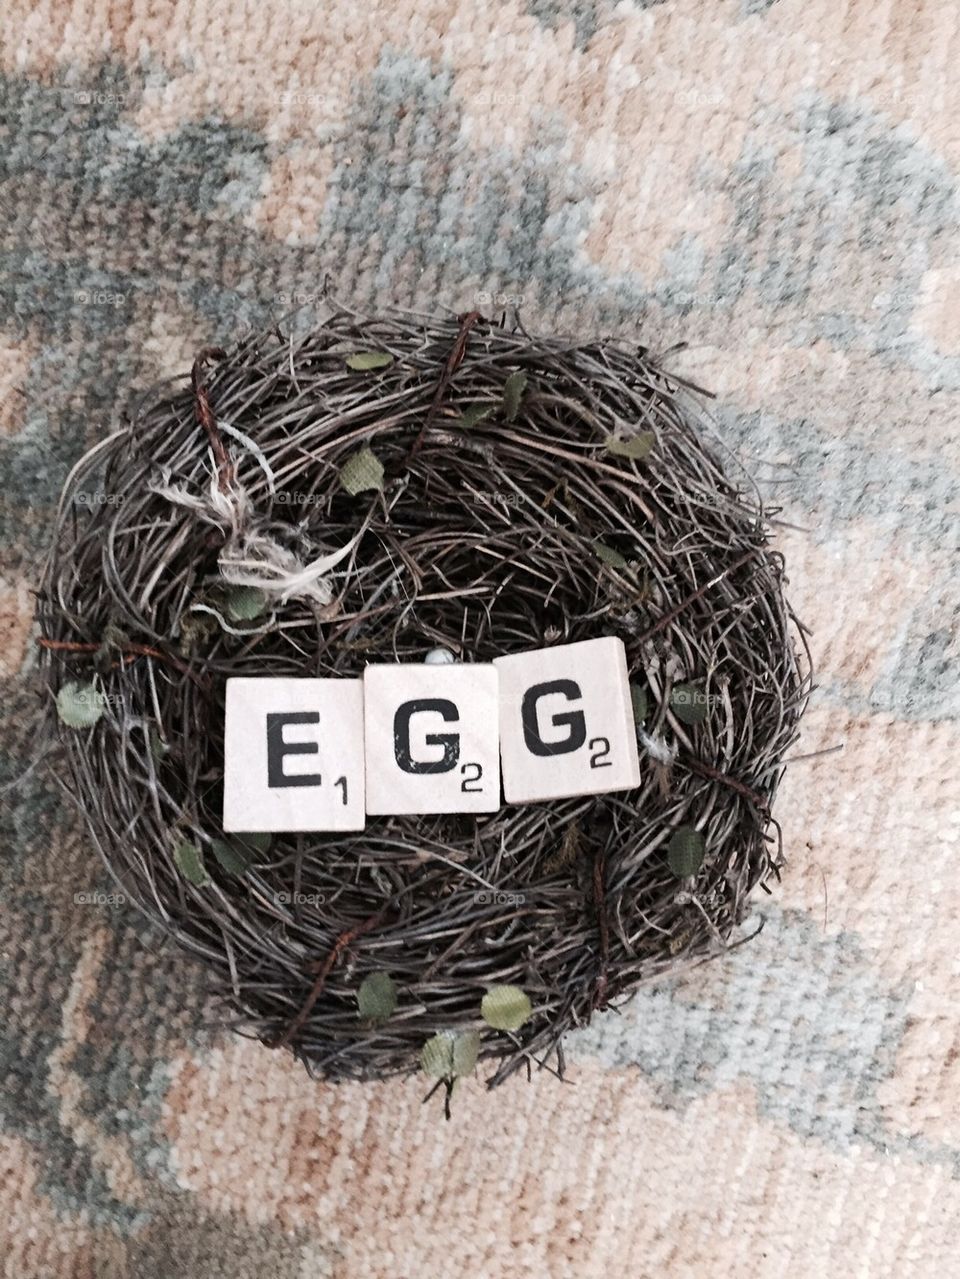 Nest egg